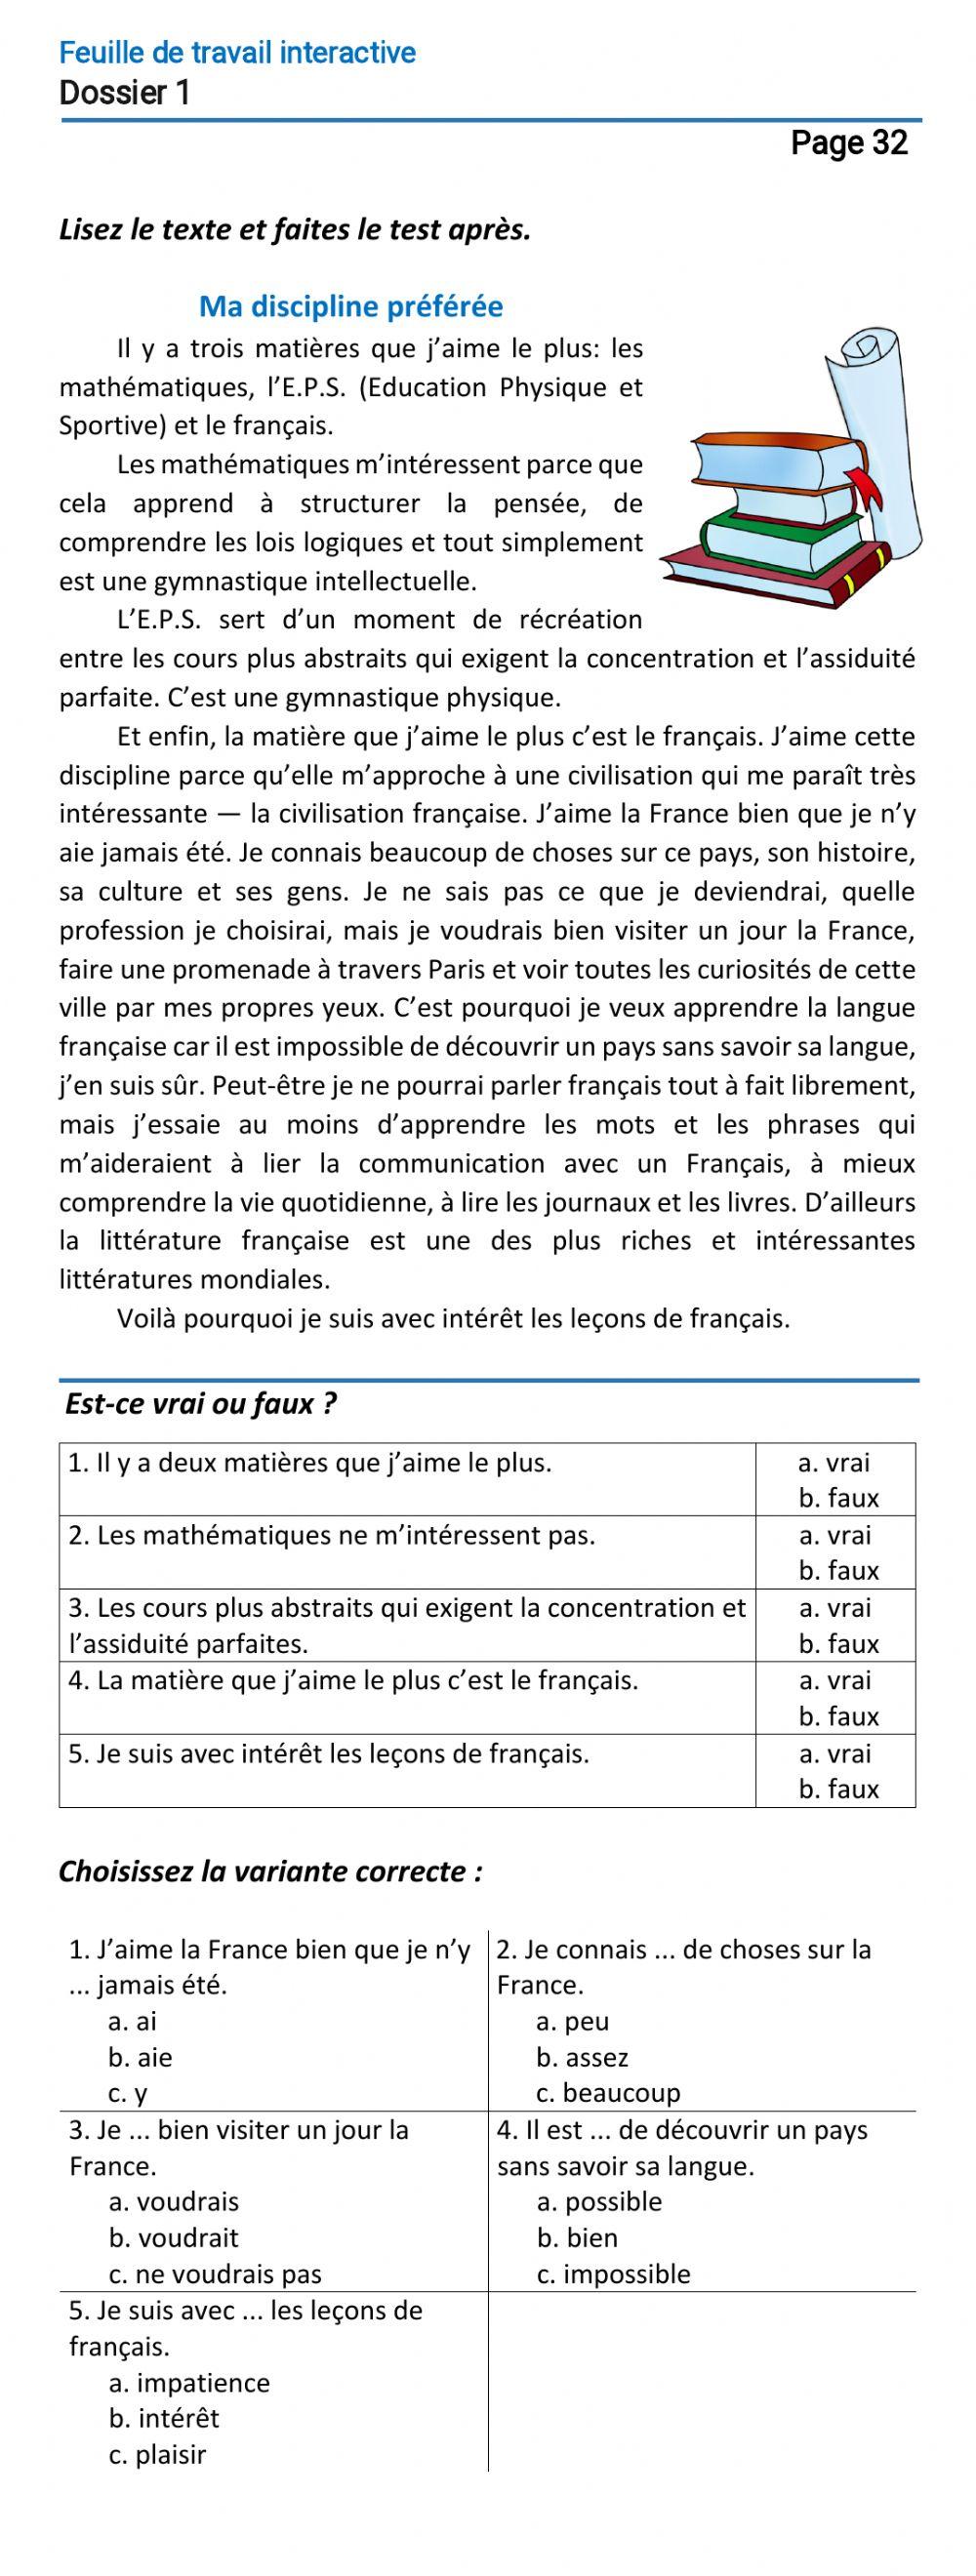 Le français-7 (повыш. ур.)-Dossier 1-Page 32